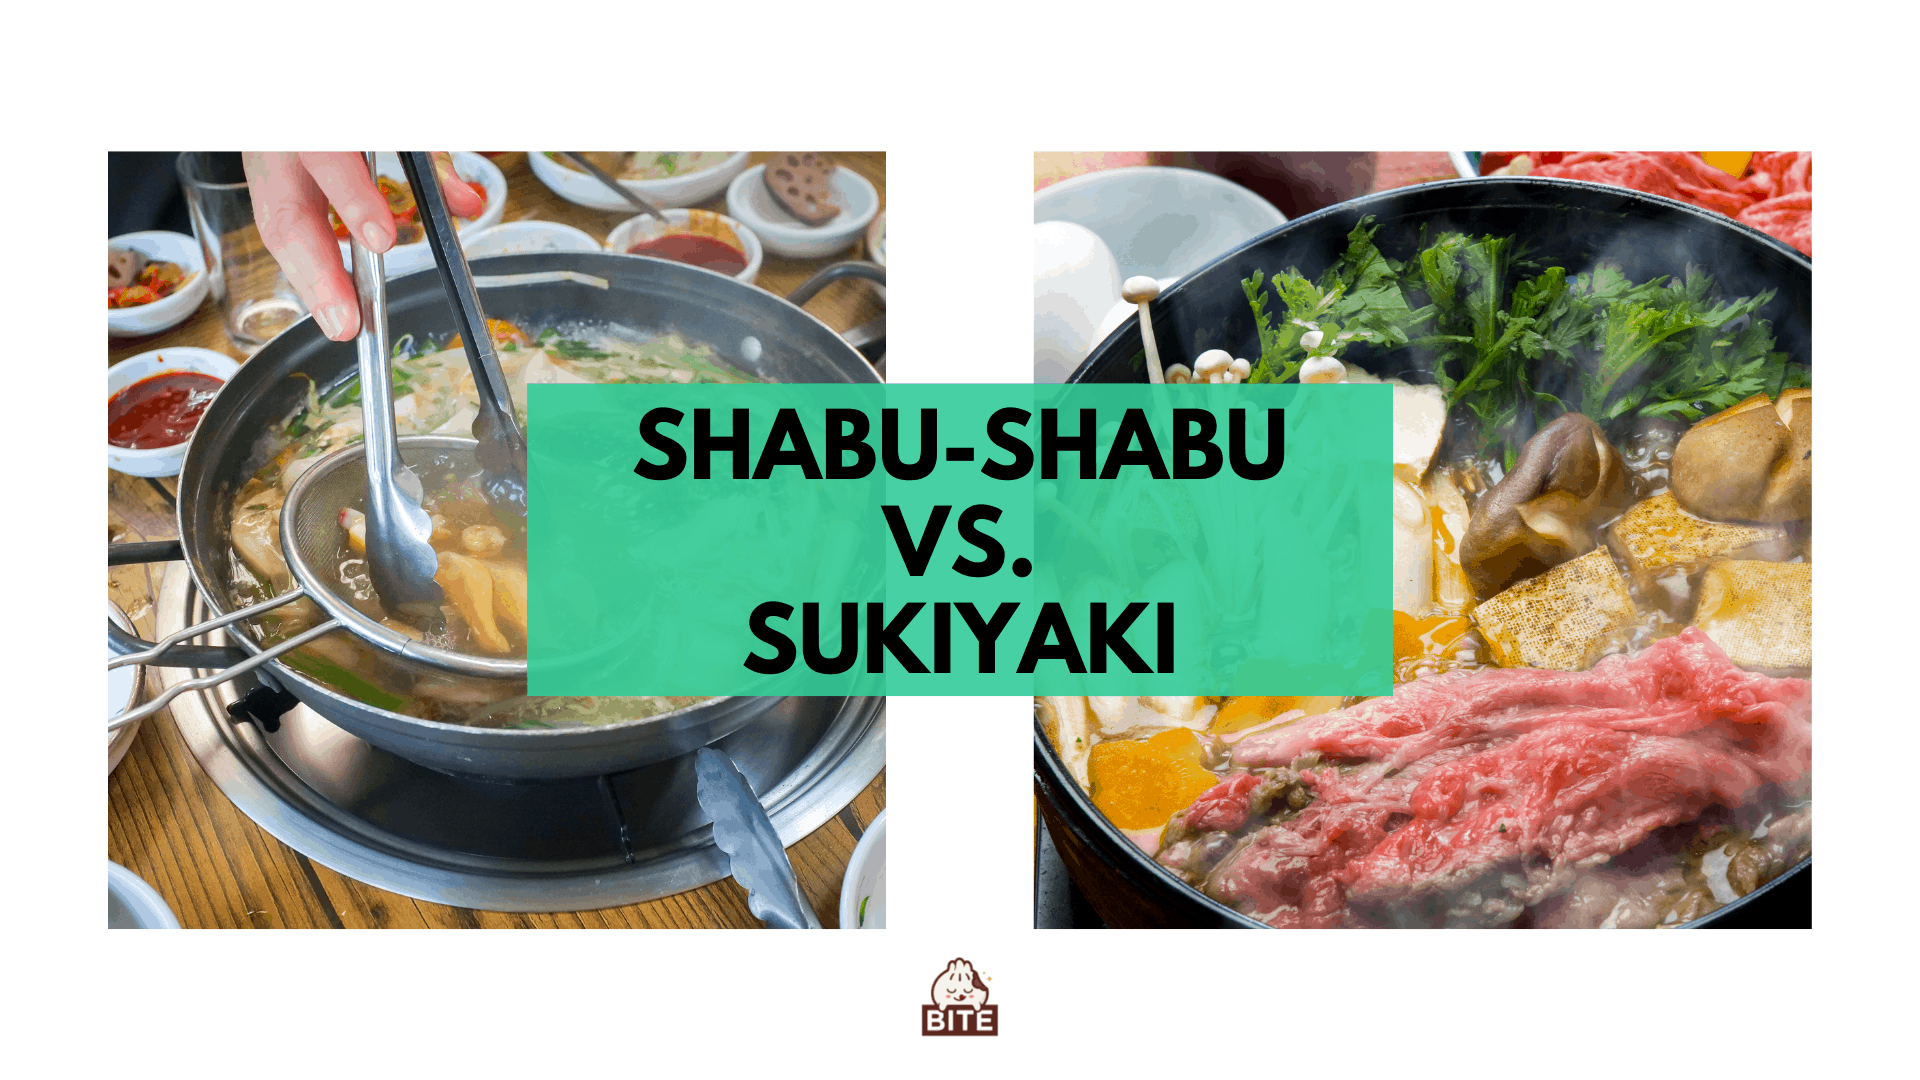 Shabu-shabu đấu với sukiyaki | Cả hai món lẩu nhưng với một biến tấu khác